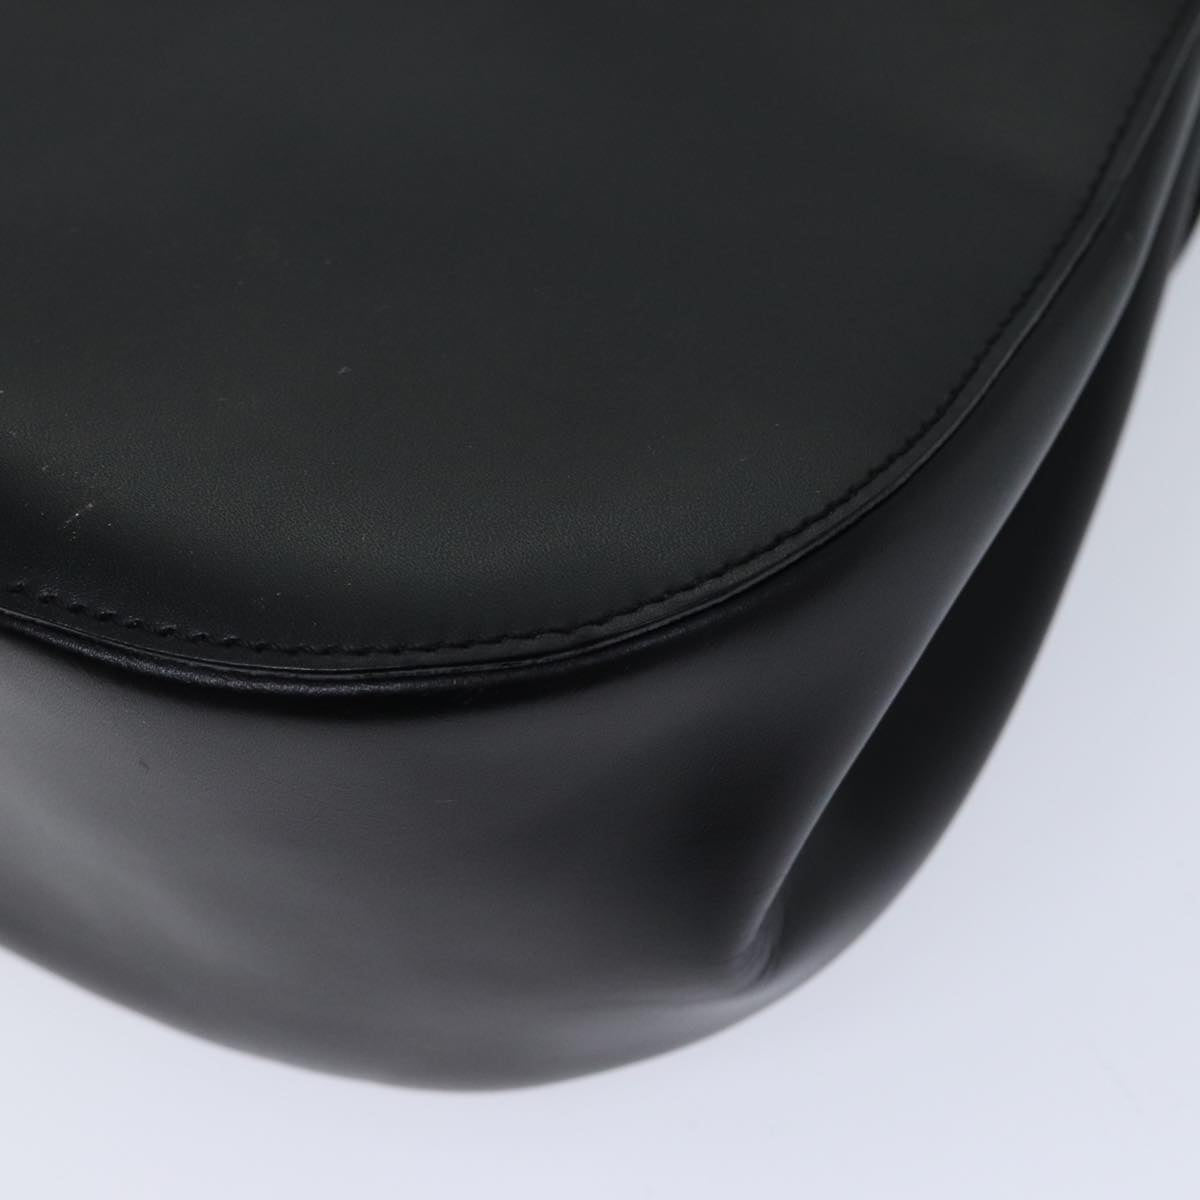 CELINE Shoulder Bag Leather Black Auth yk11965